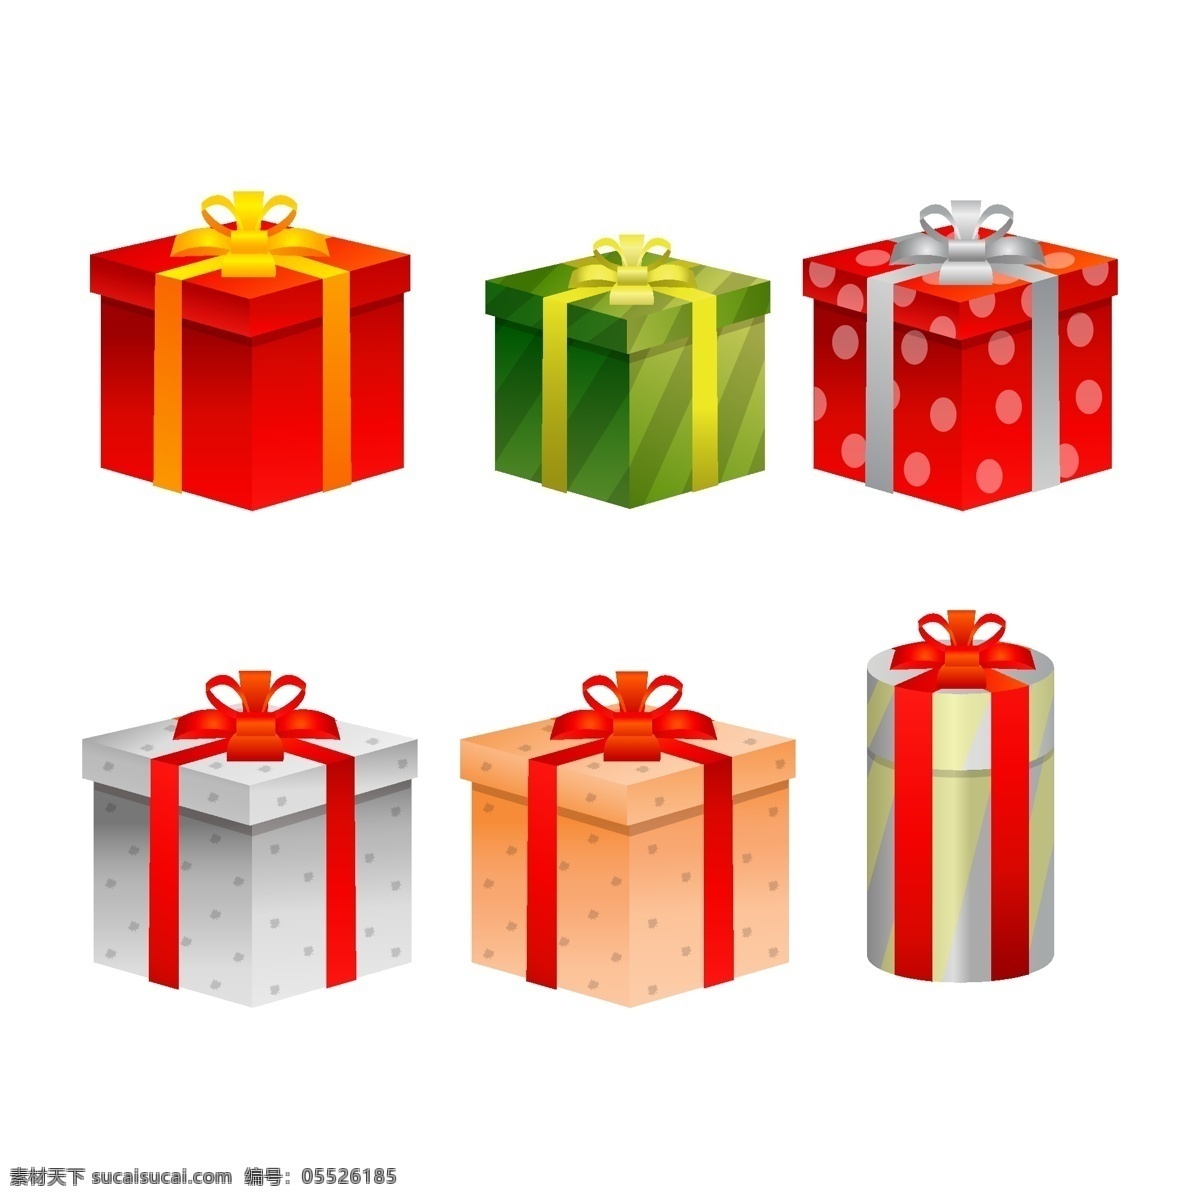 款 圣诞节 礼盒 元素 卡通礼盒 礼品包装 礼物 蝴蝶结 丝带 盒子圣诞礼物 礼品盒 手绘礼盒 节日礼盒 礼品礼盒 卡通素材 圣诞